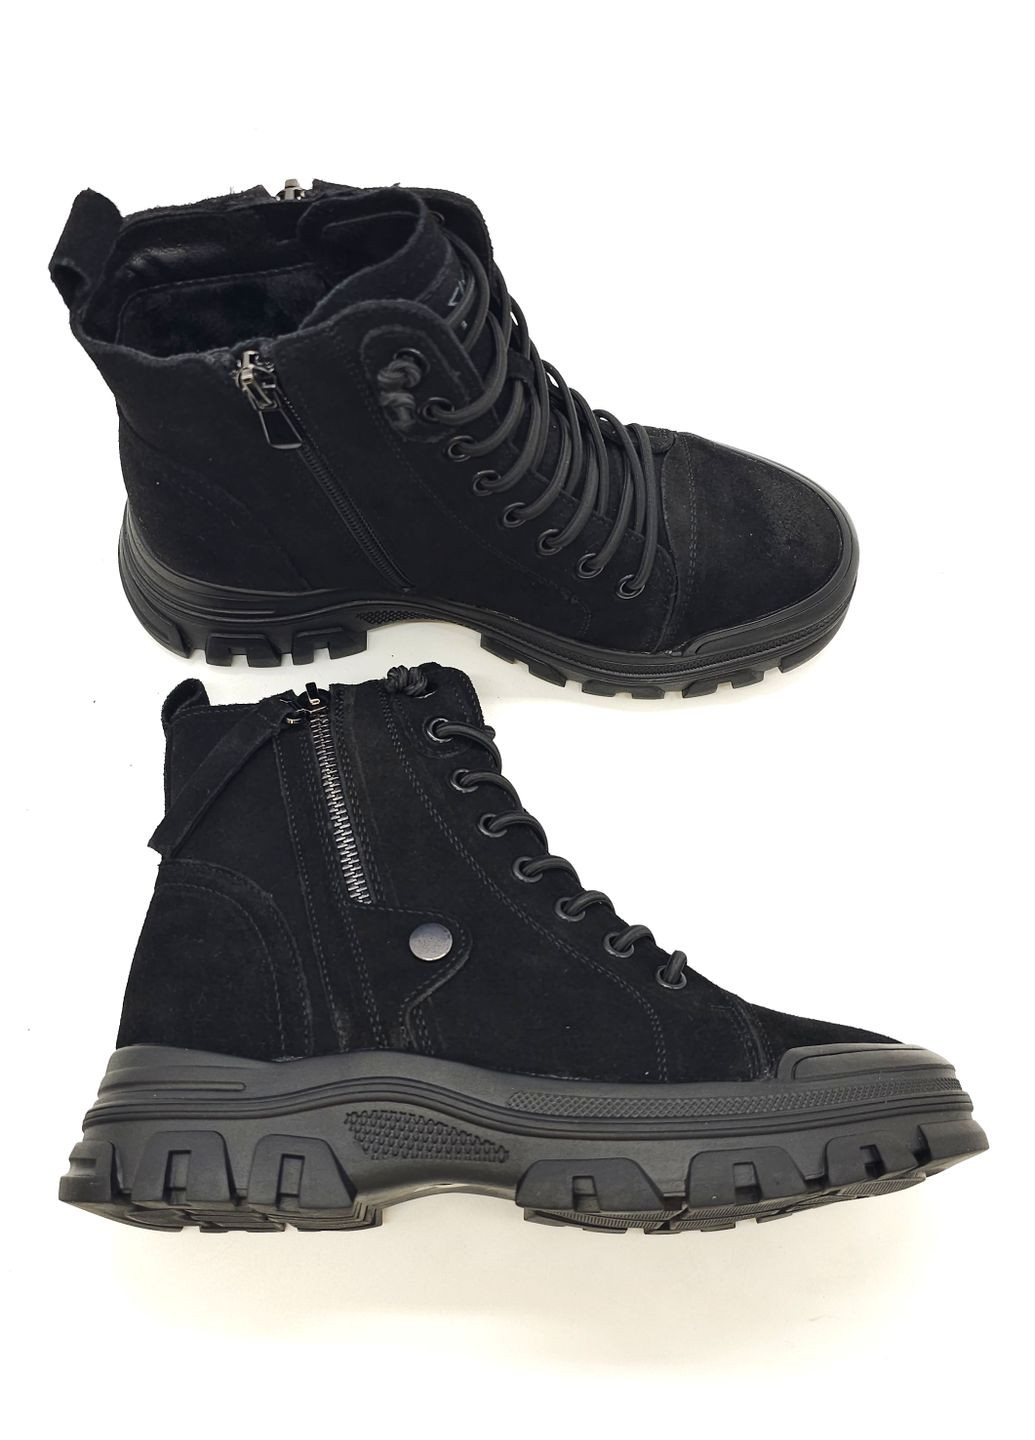 Осенние женские ботинки черные замшевые l-13-7 23 см (р) Lonza